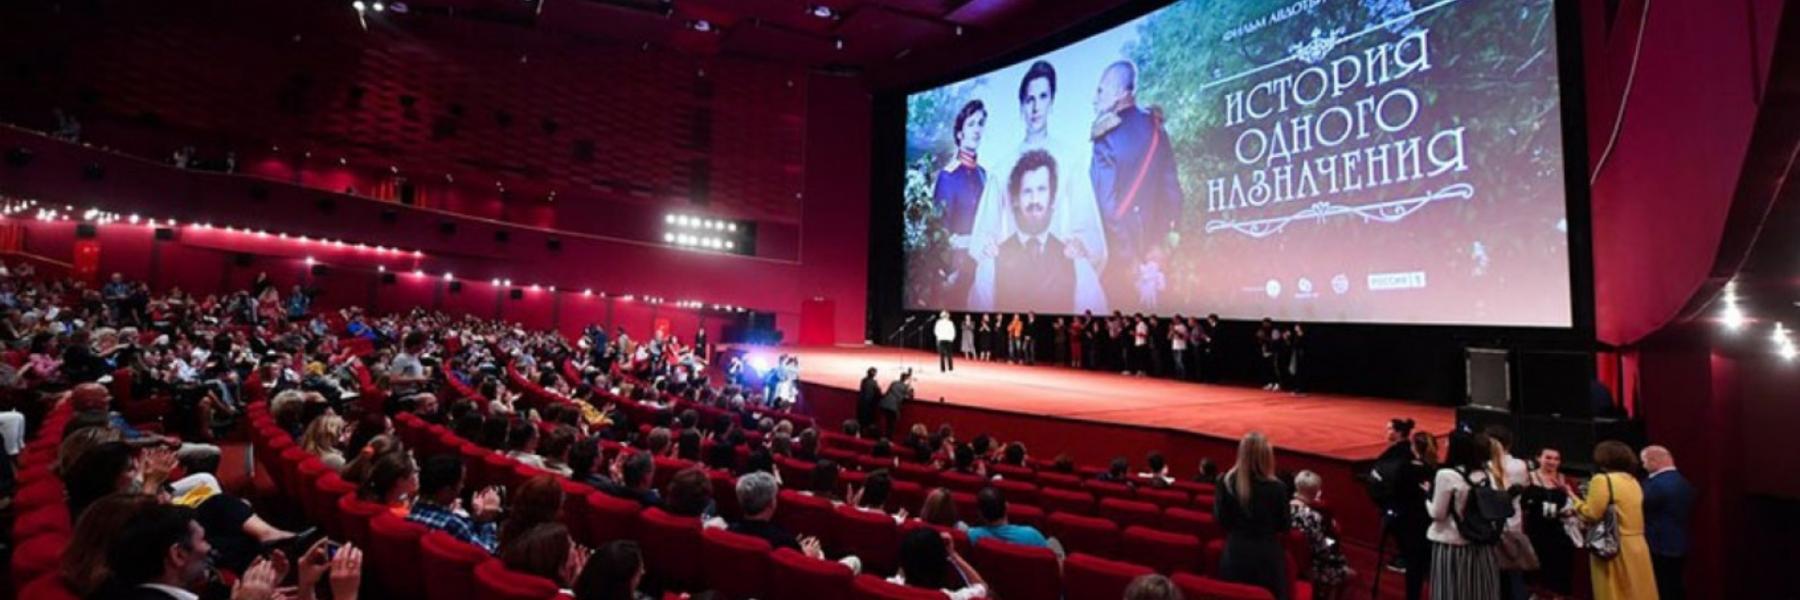 مركز السينما العربية يعلن عن جوائز النسخة الرابعة من جوائز النقاد للأفلام العربية